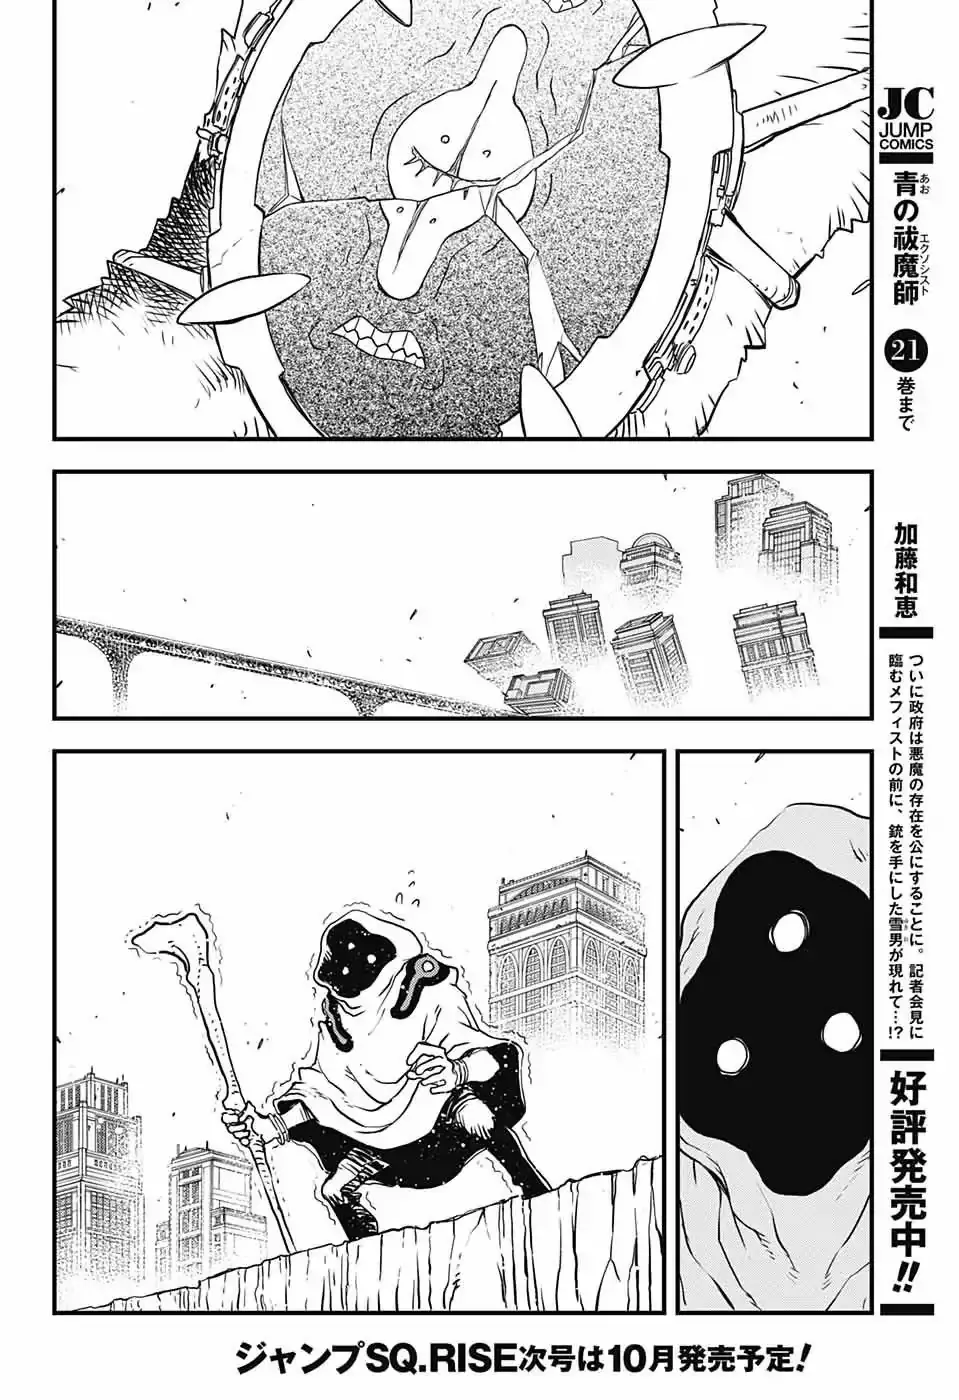 Kekkai Sensen - Back 2 Back - 15 page 58